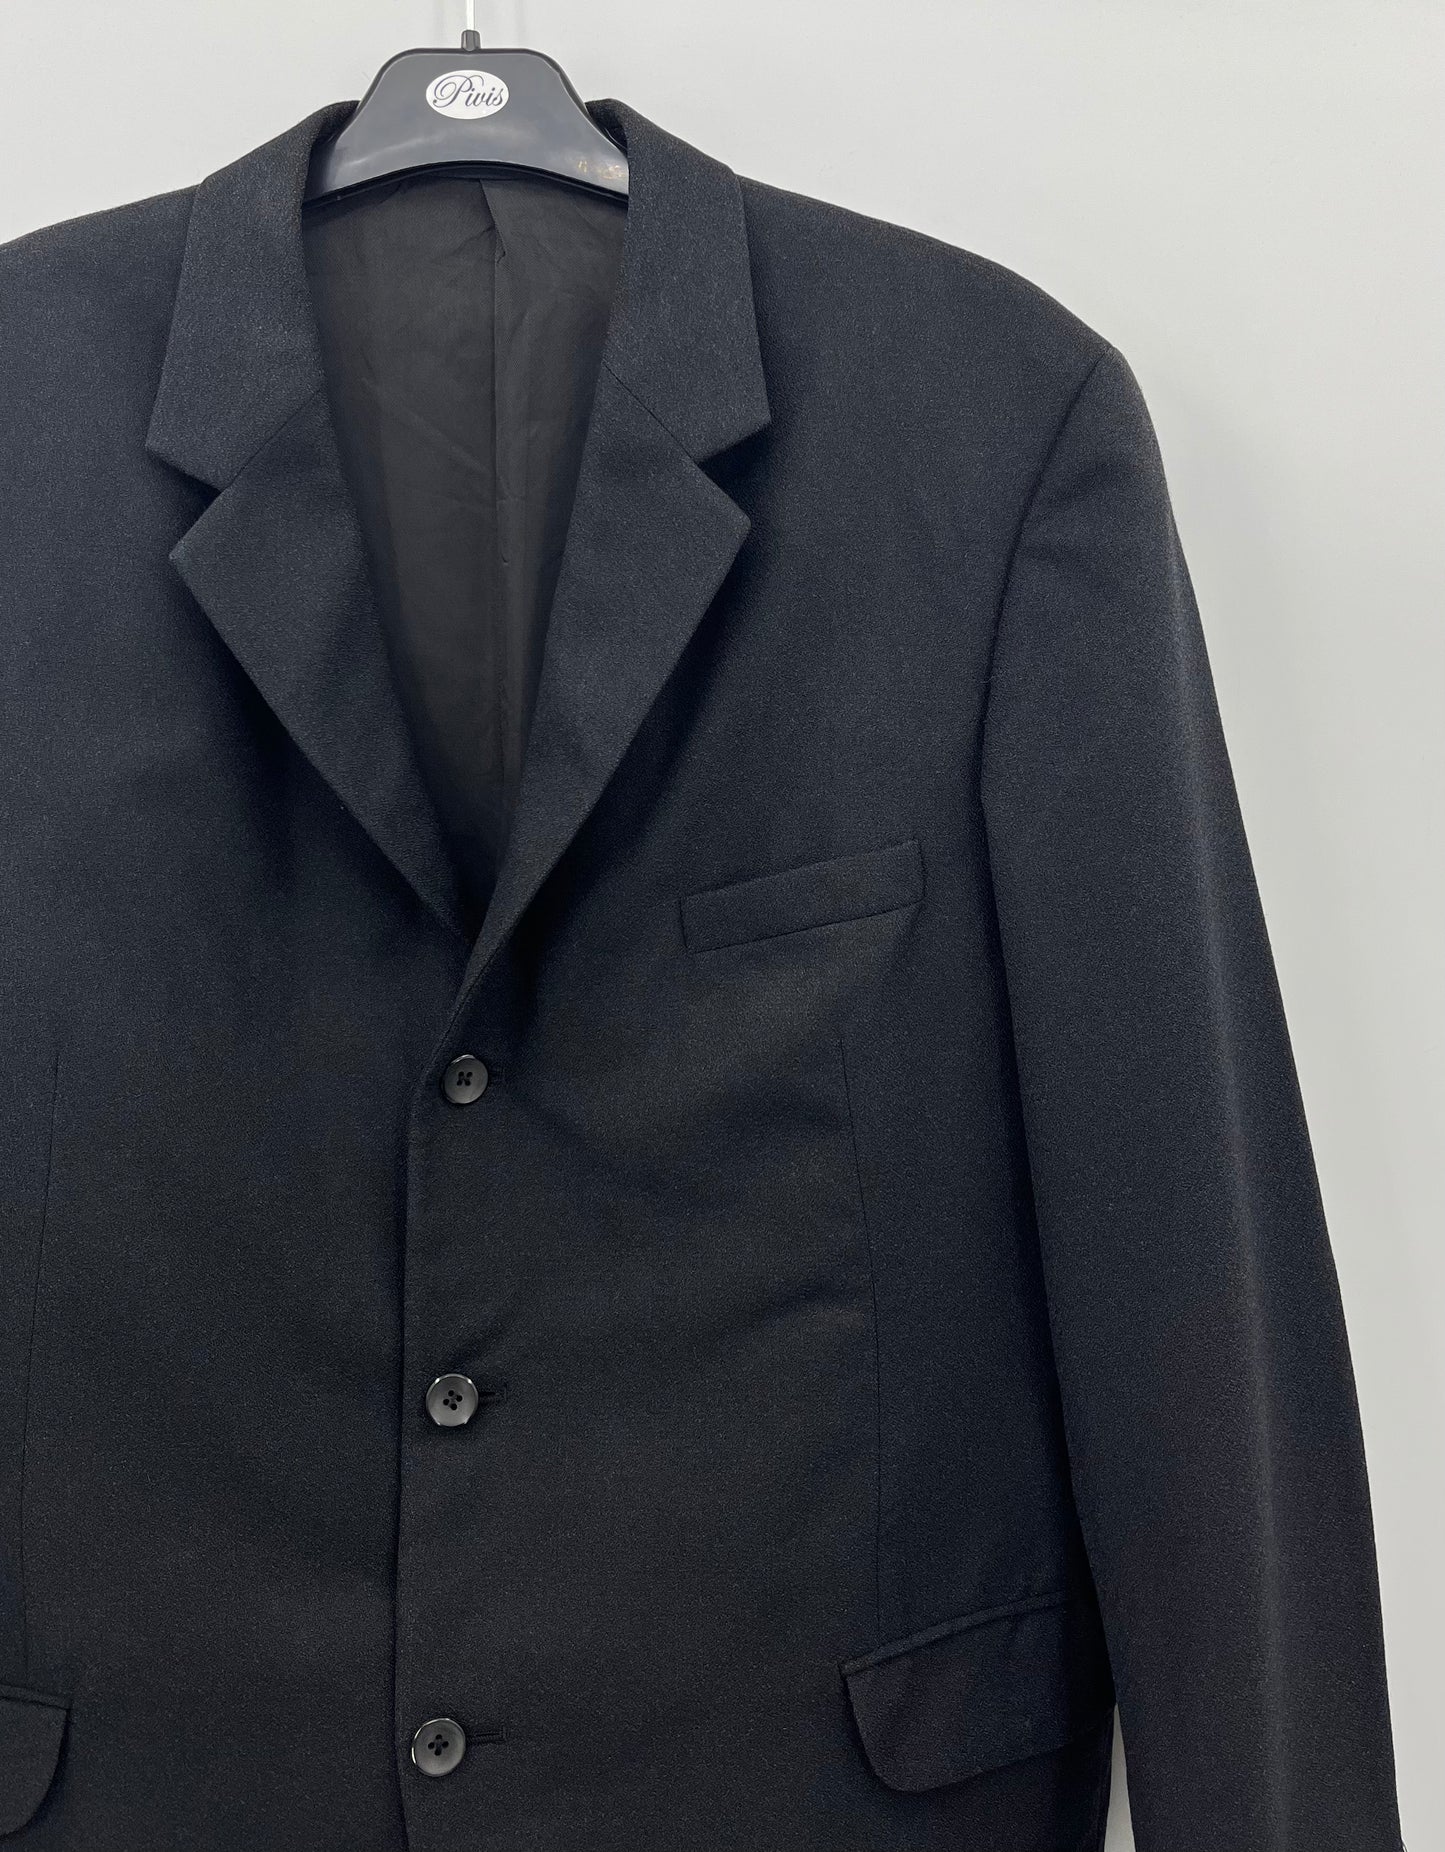 Kreivi, musta miesten puku, 60-luku, kokoarvio S